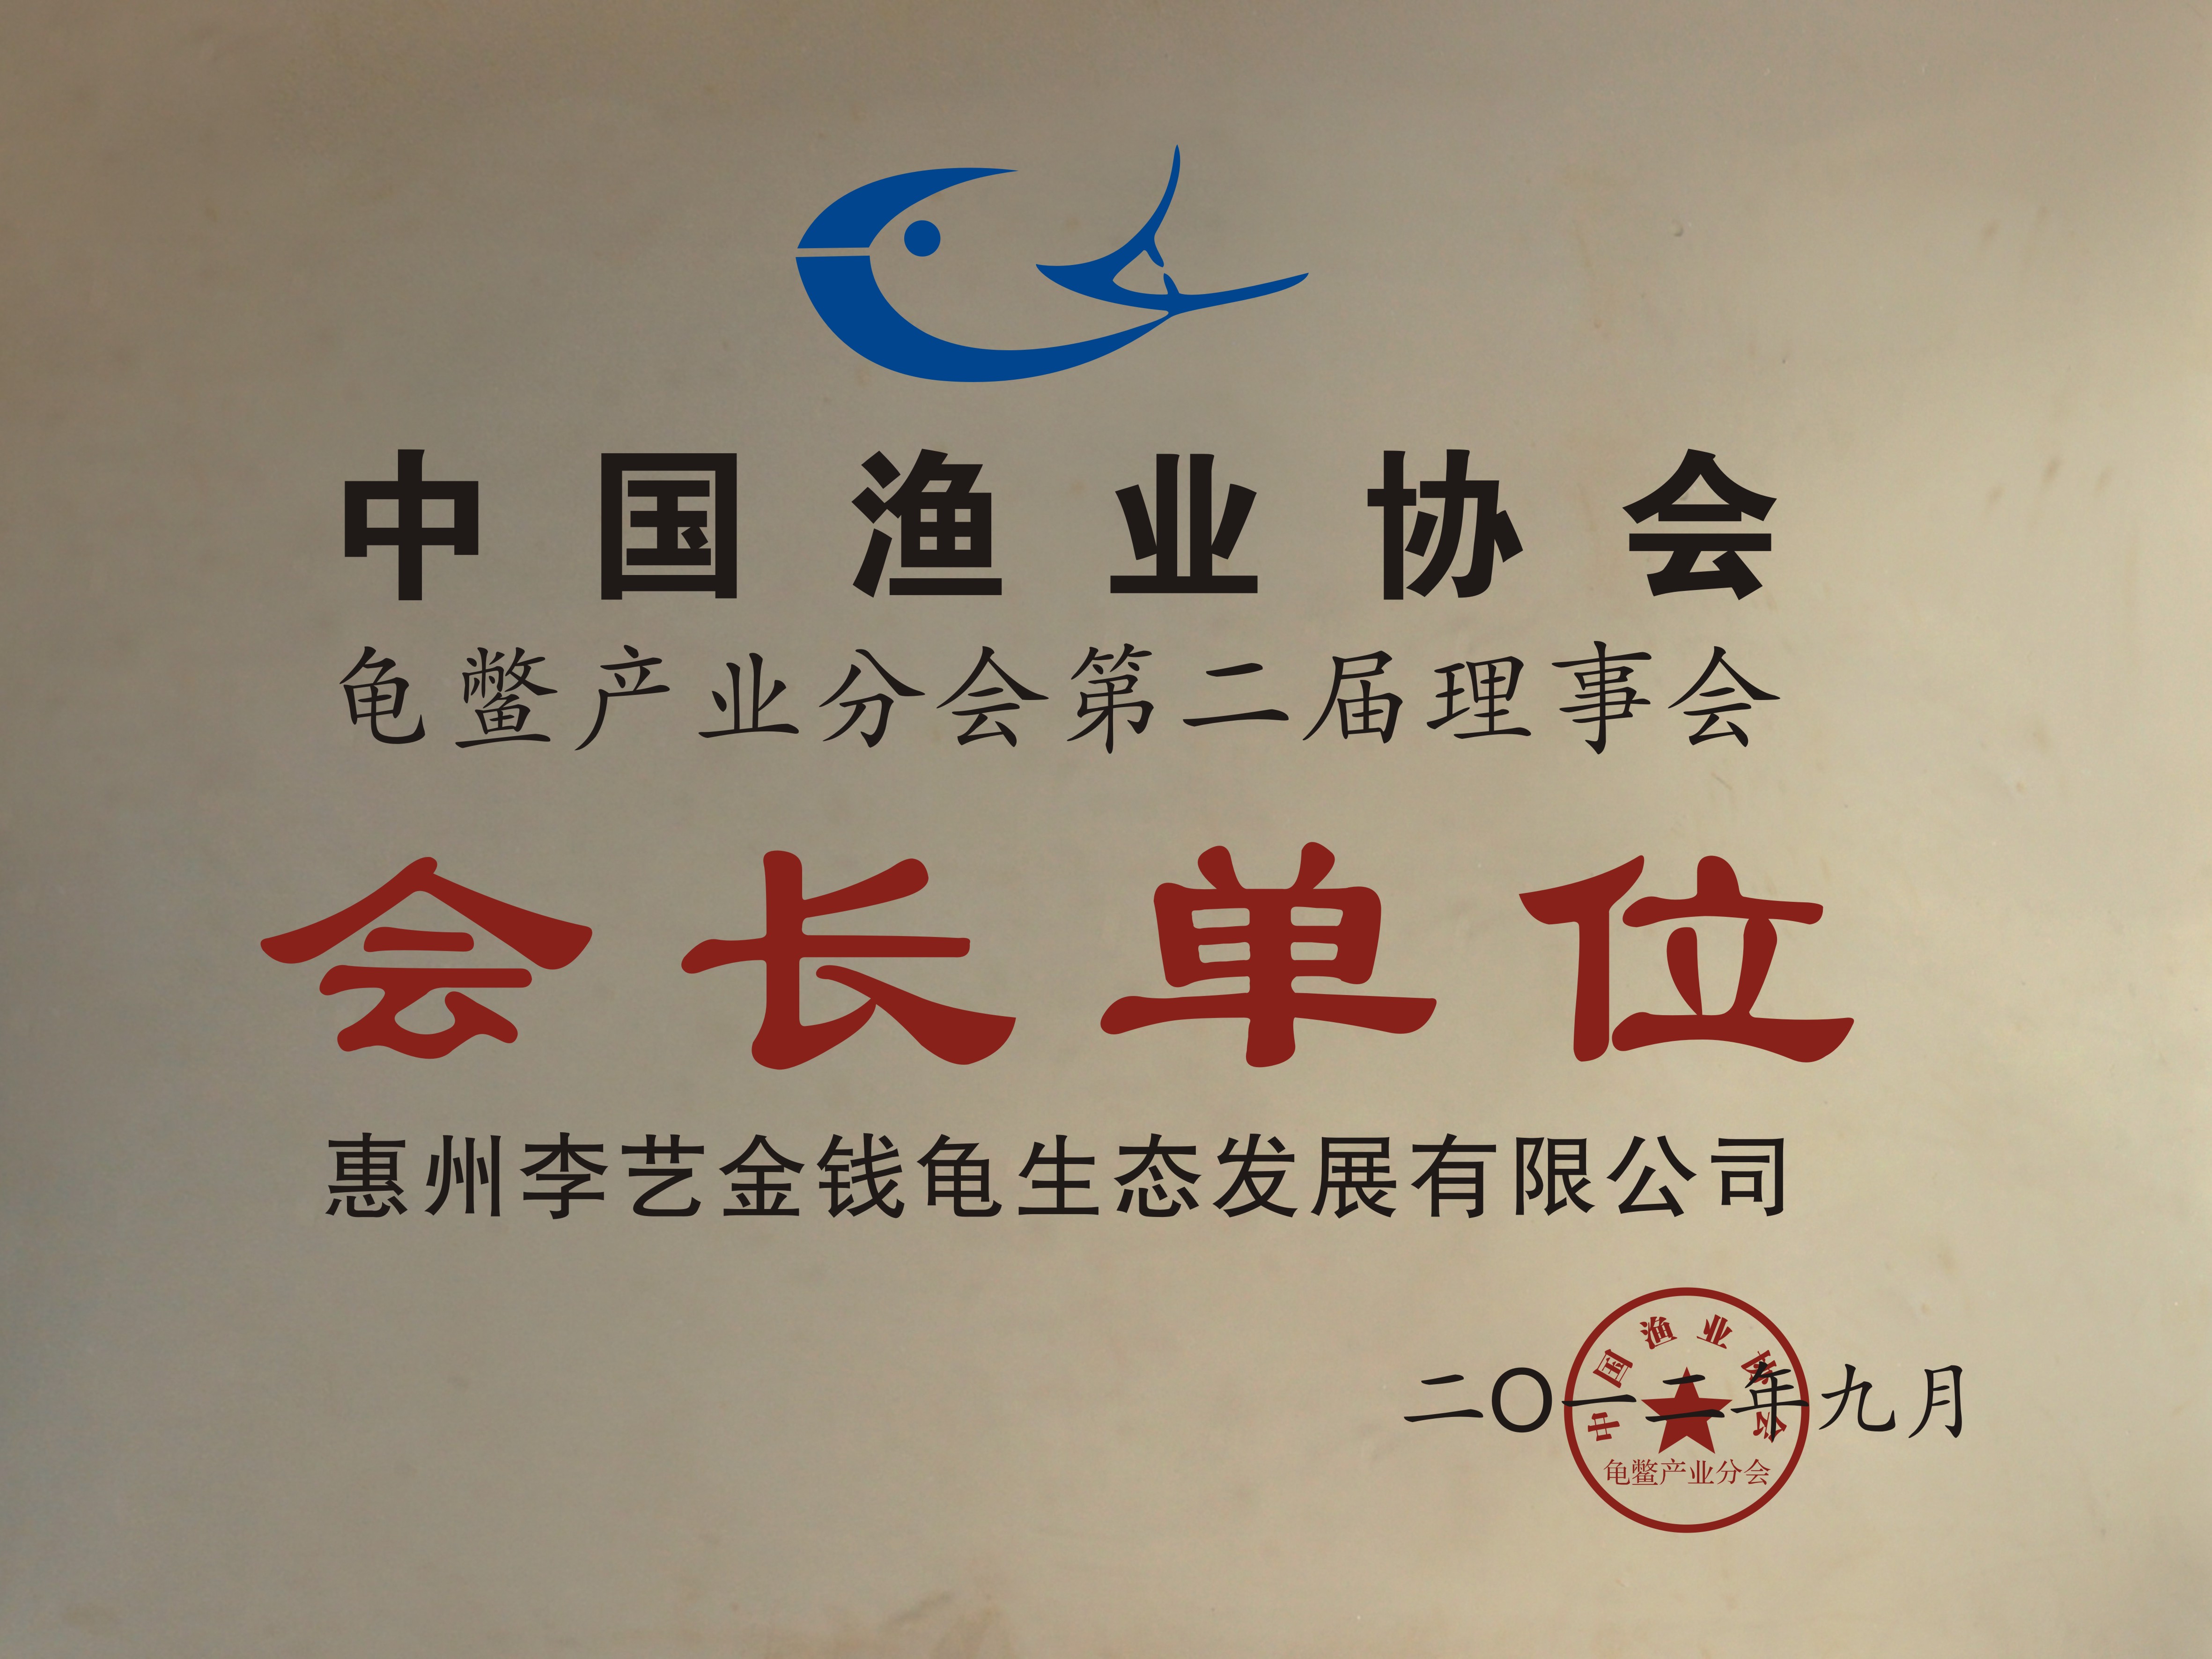 中國漁業協會龜鱉產業分會第二屆理事會會長單位